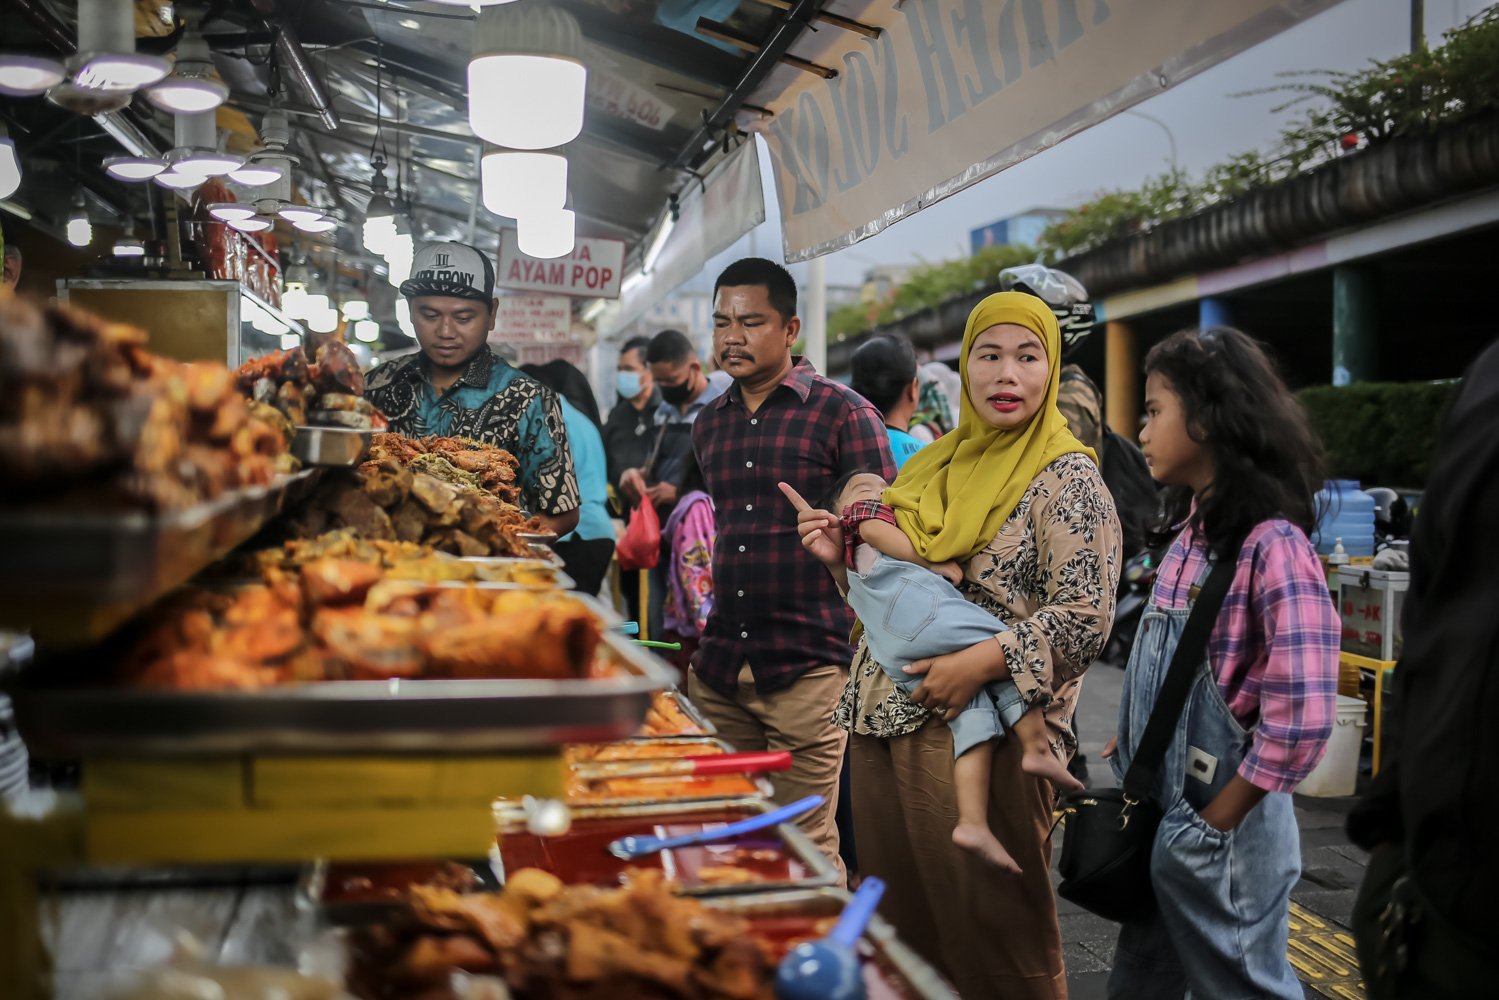 Pembeli memilih menu berbuka puasa di Sentra kuliner Nasi Kapau, Jalan Kramat Raya, Senen, Jakarta Pusat, Jumat (24/3). Menjelang berbuka puasa sentra kuliner yang menyajikan Nasi Kapau dan berbagai makanan khas sumatra barat ini ramai dikunjungi pembeli.